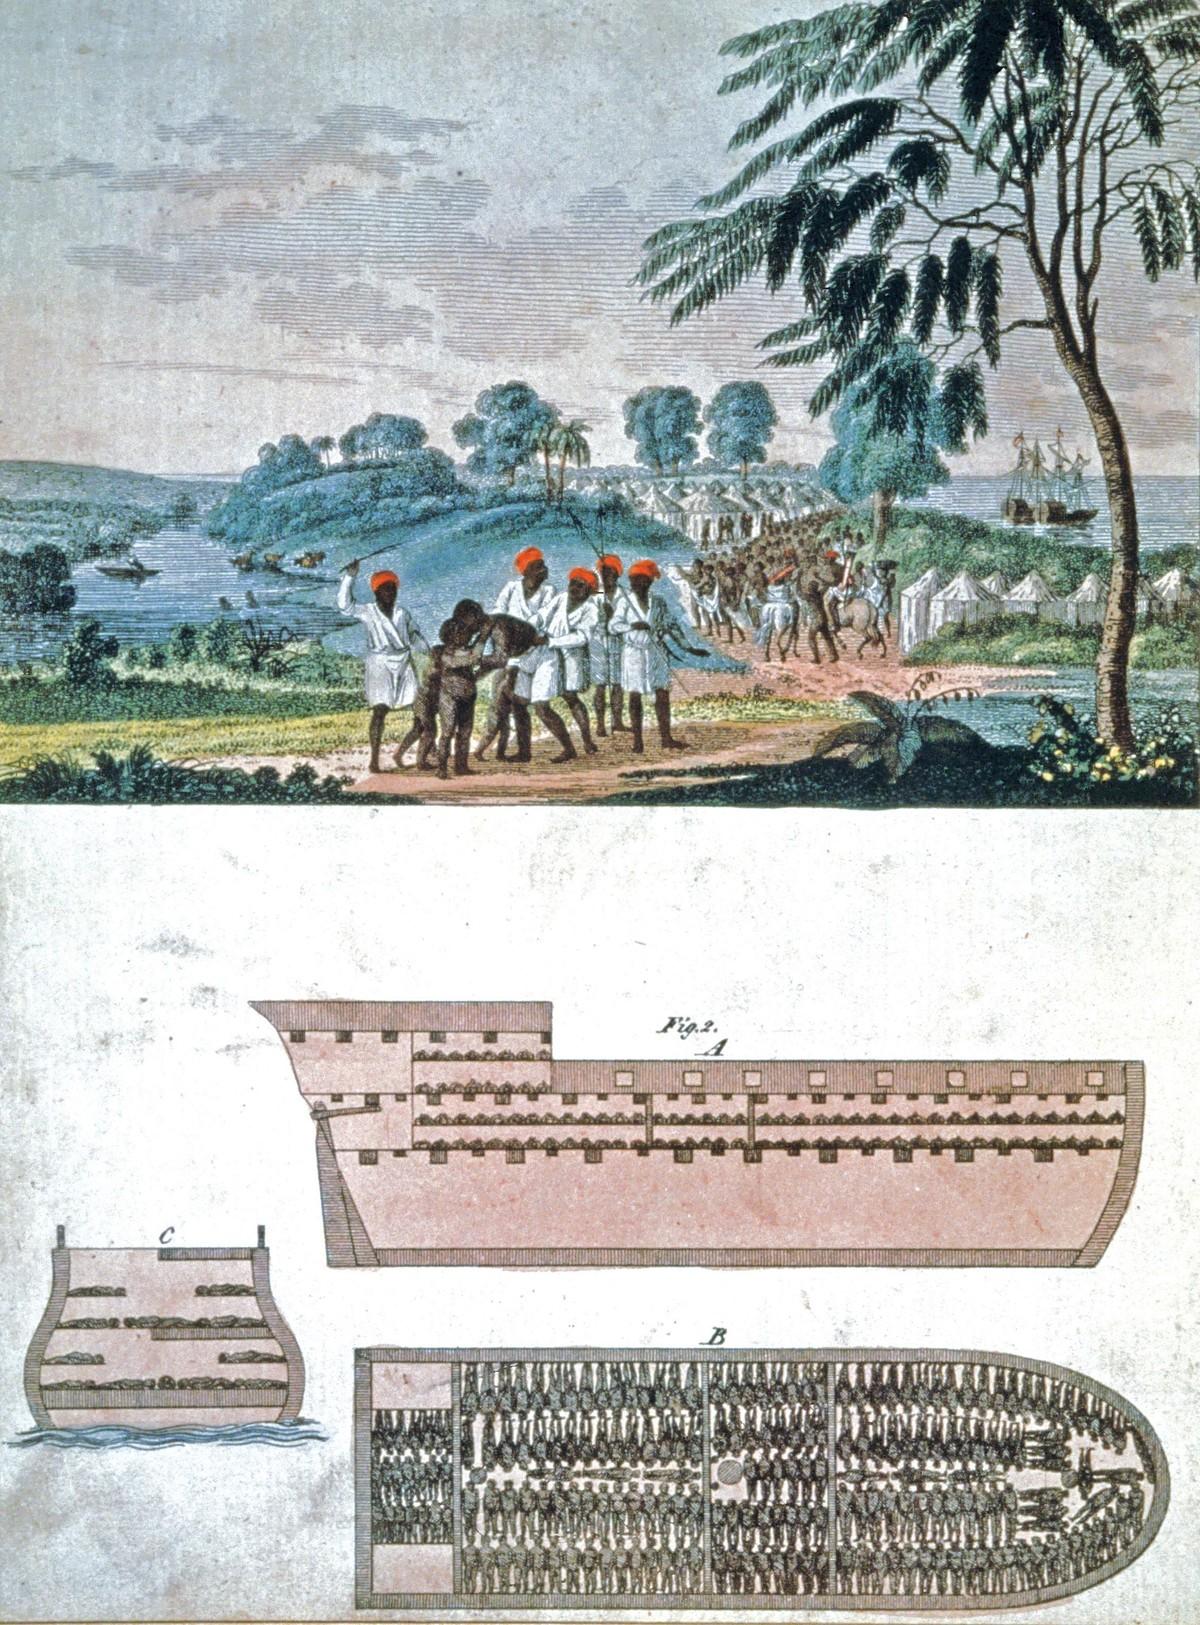 La traite des esclaves en Afrique, gravure, vers 1750.